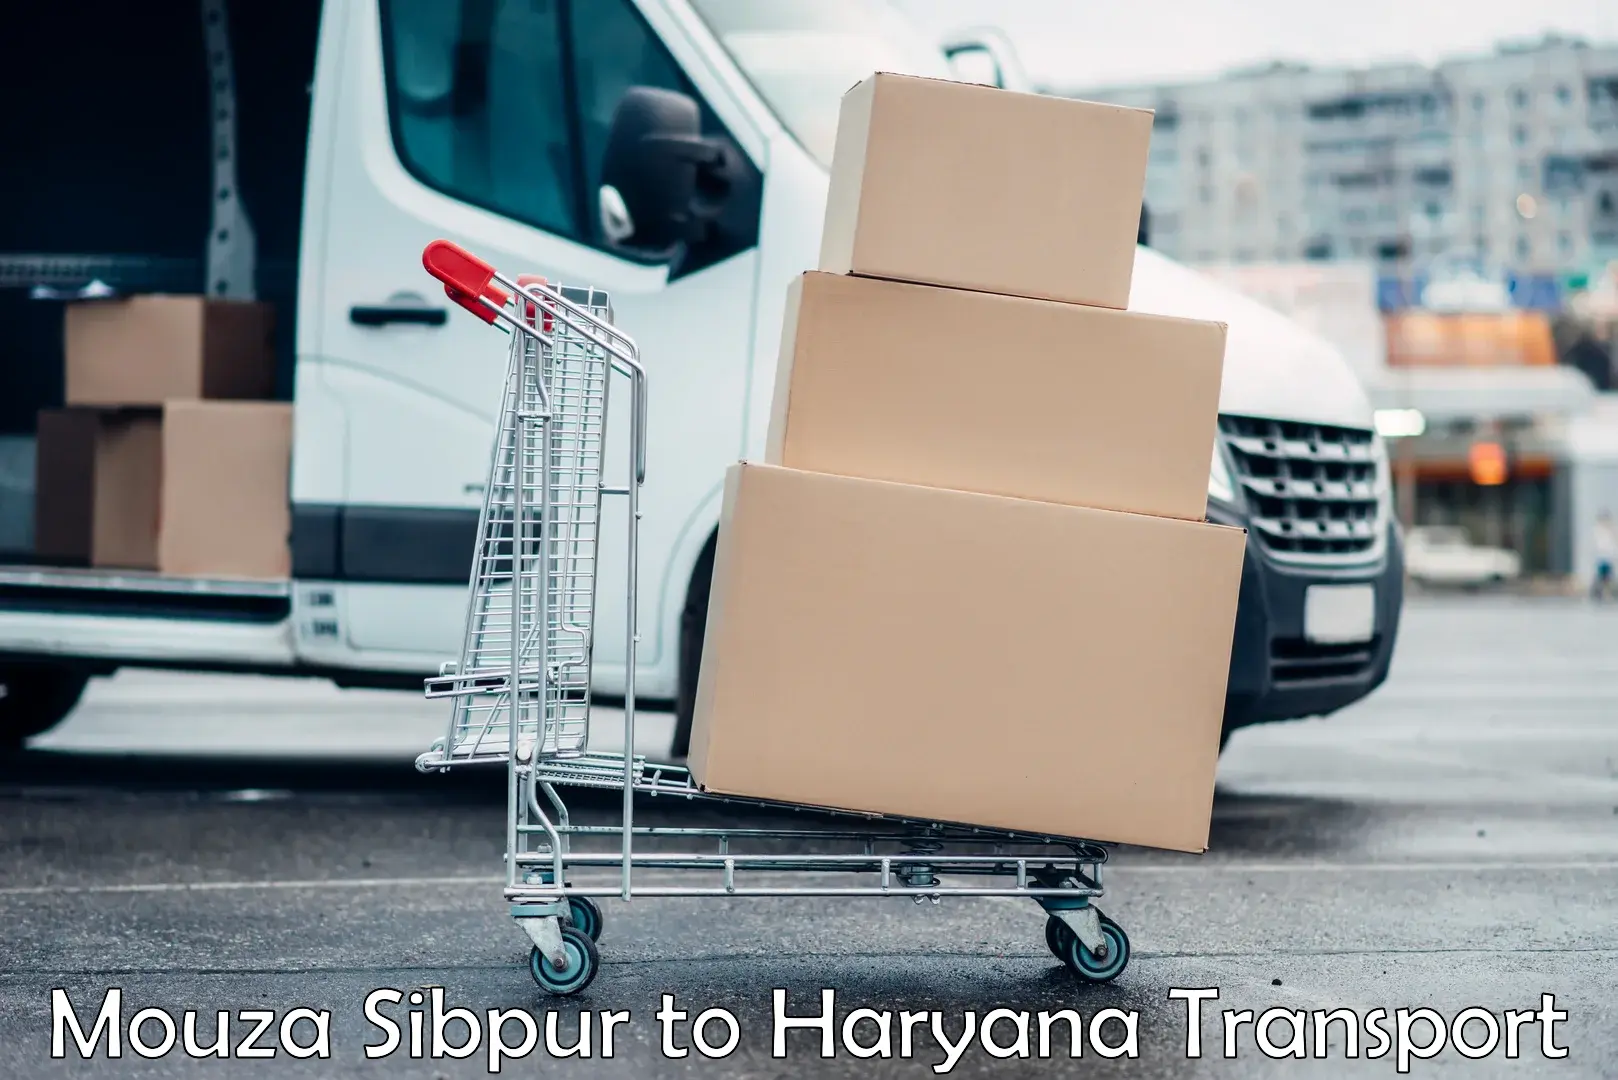 Shipping services Mouza Sibpur to Chaudhary Charan Singh Haryana Agricultural University Hisar